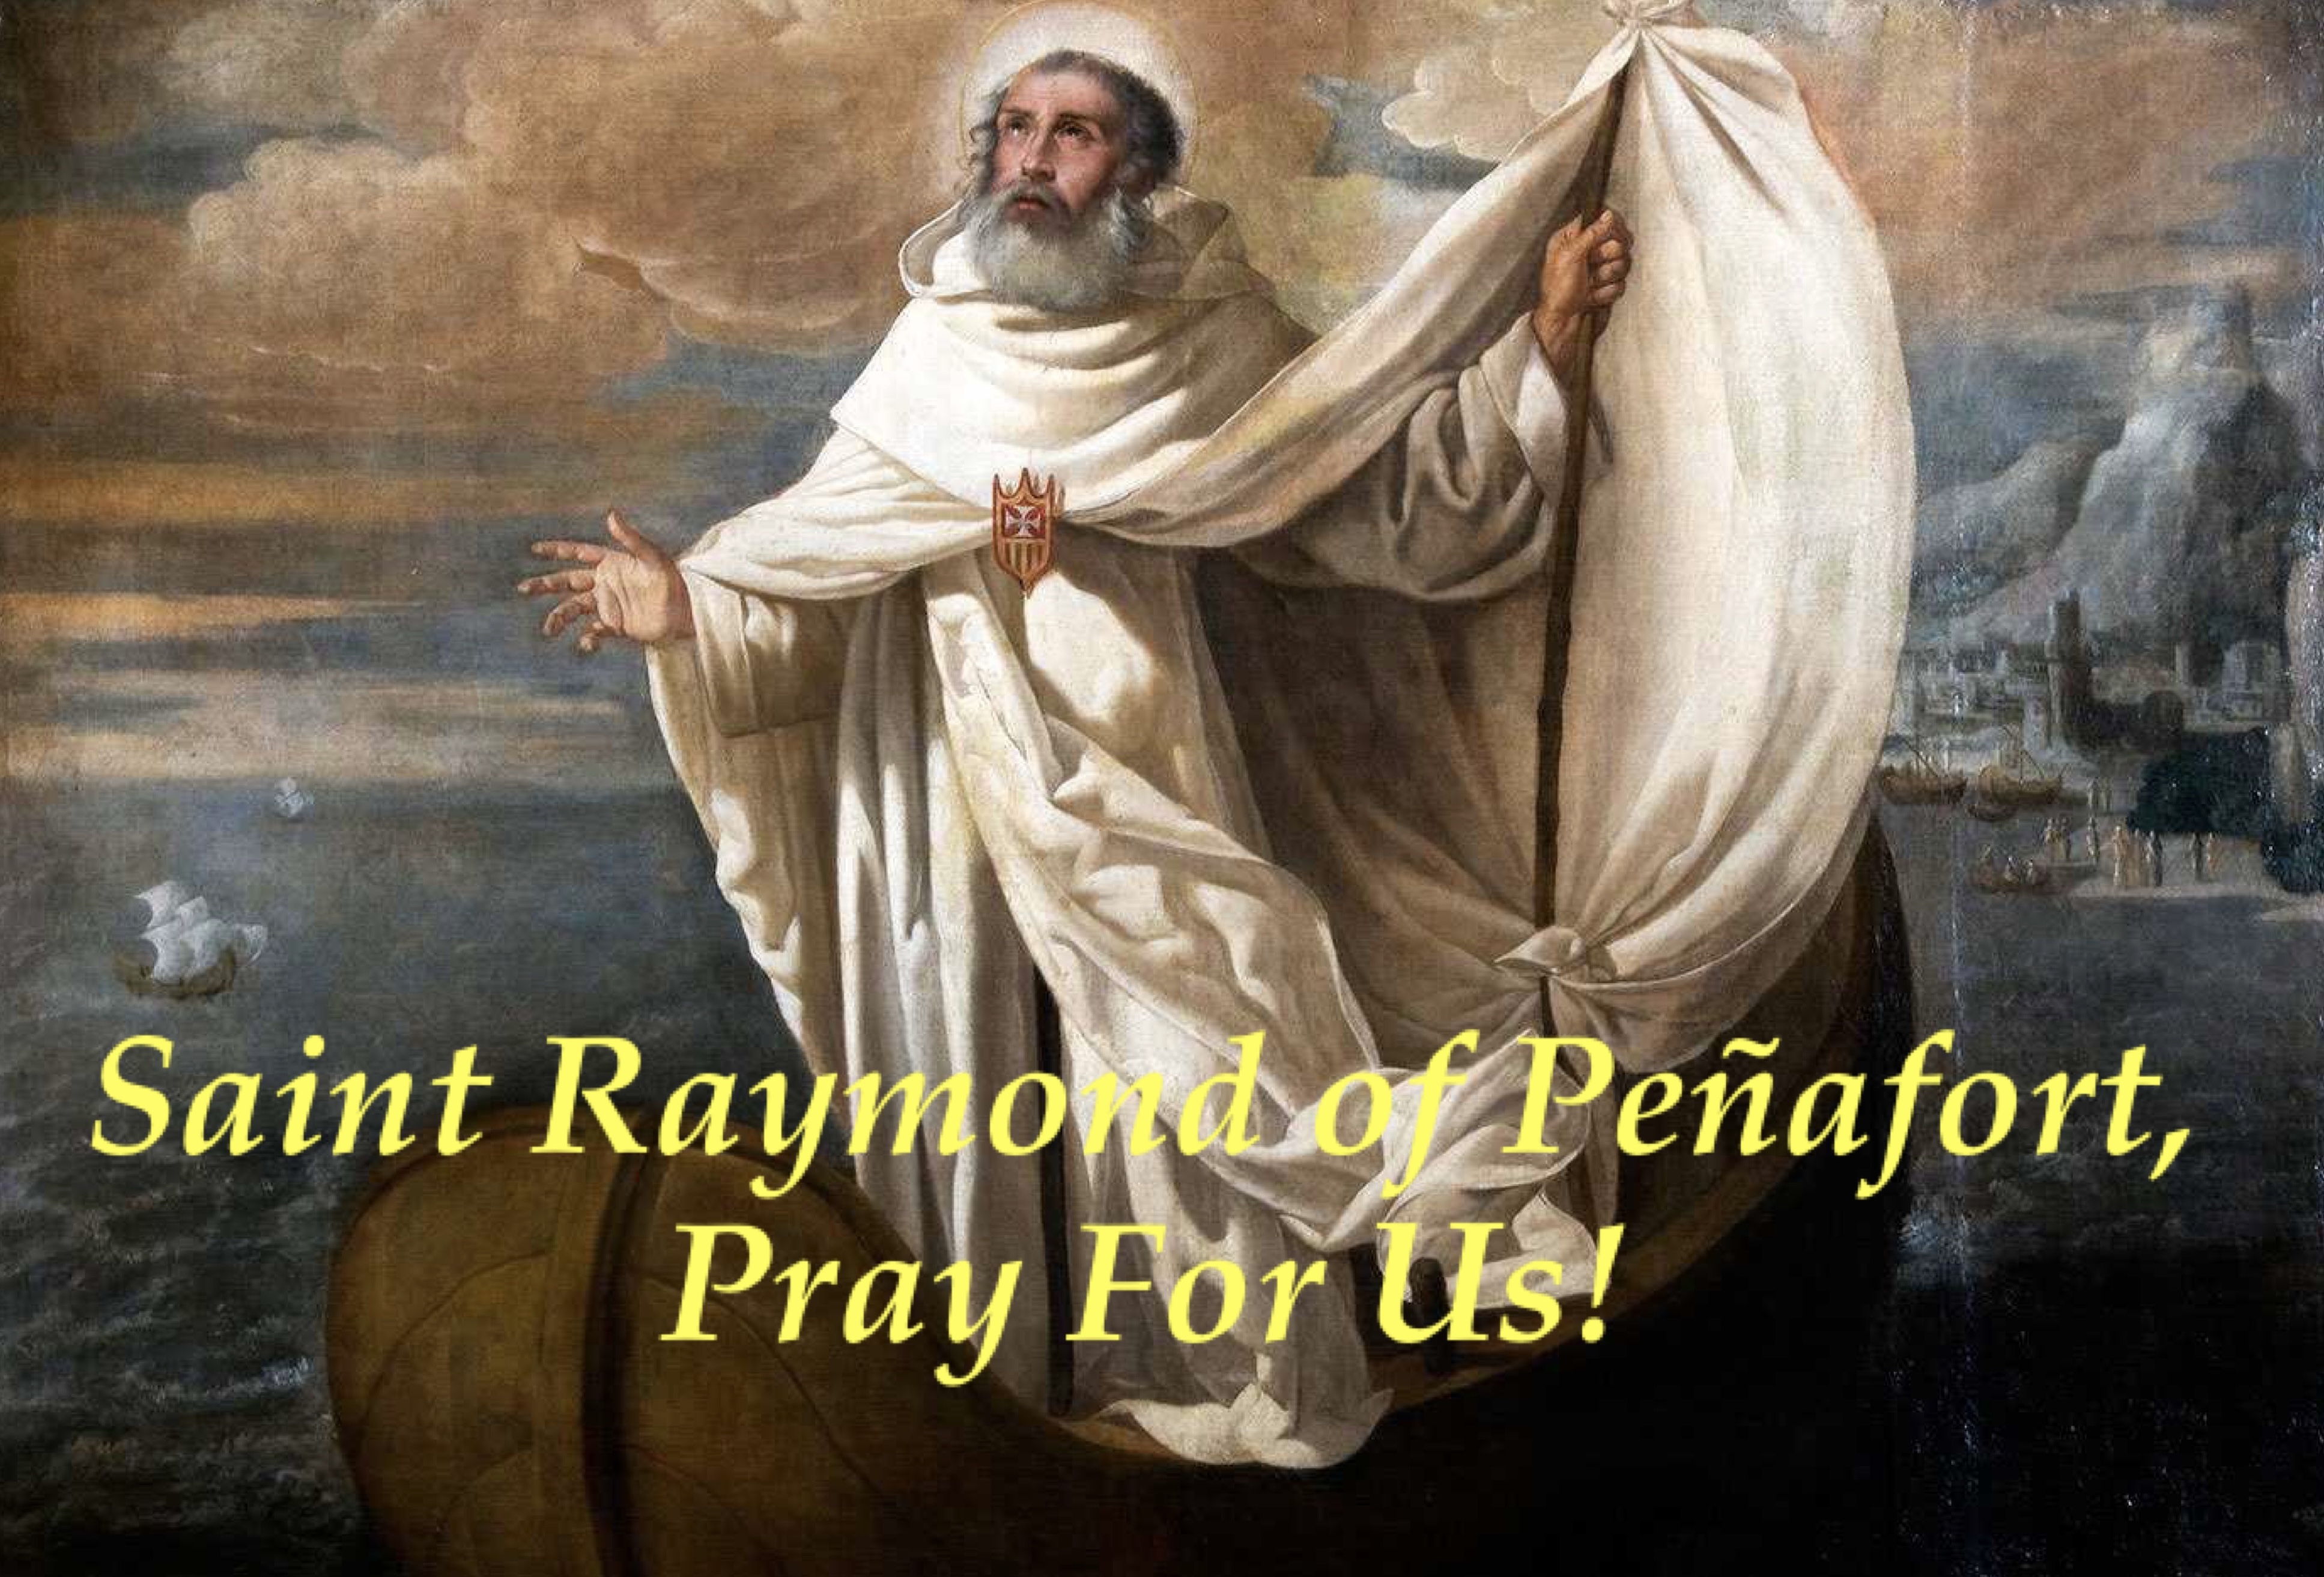 7th January - Saint Raymond of Peñafort